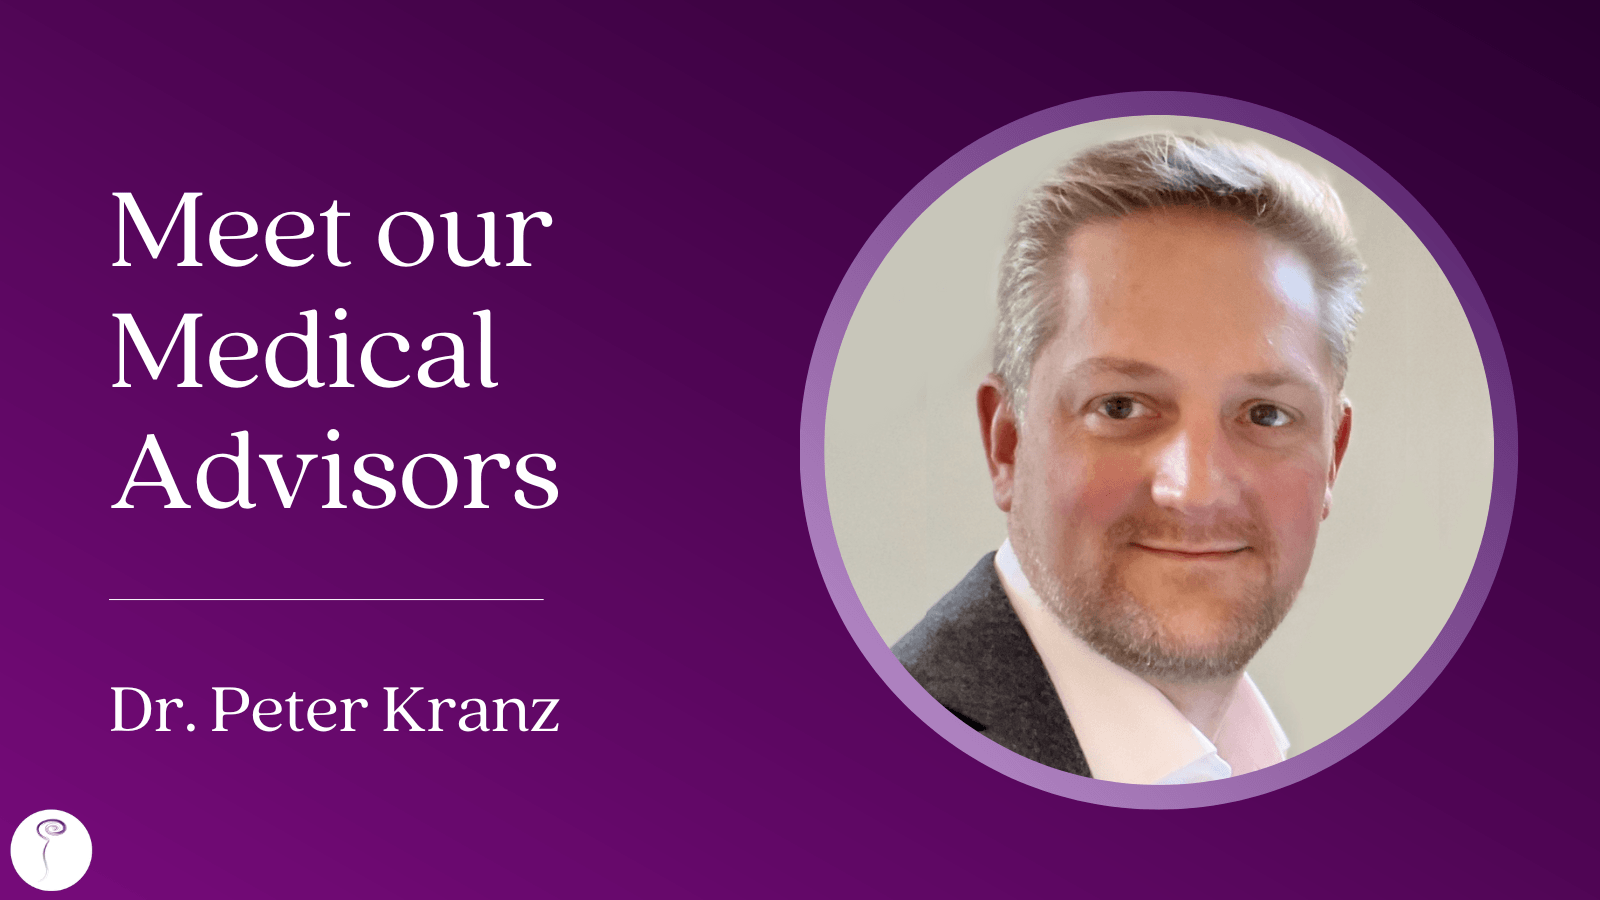 Meet our Medical Advisors: Dr. Peter Kranz